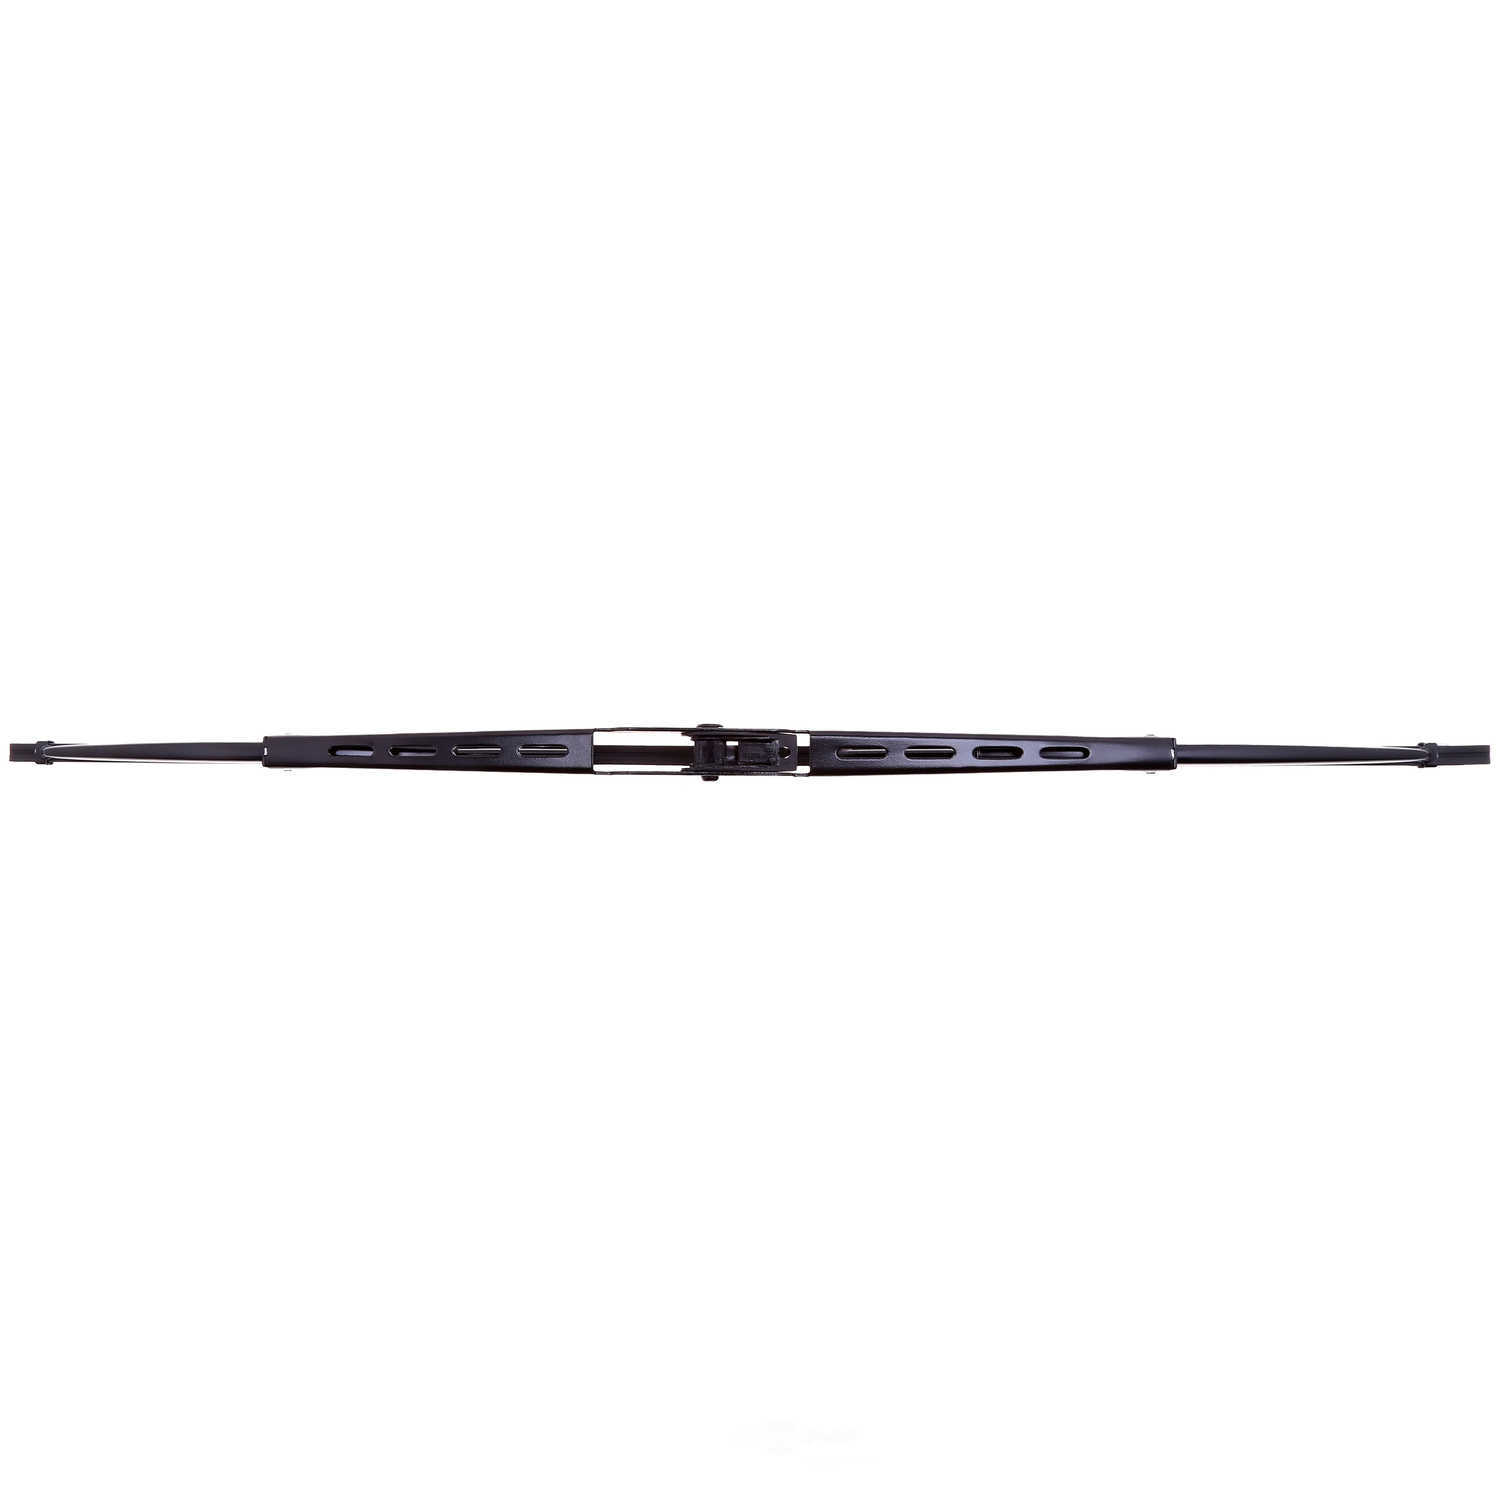 ANCO WIPER PRODUCTS - ANCO 31-Series Wiper Blade - ANC 31-18